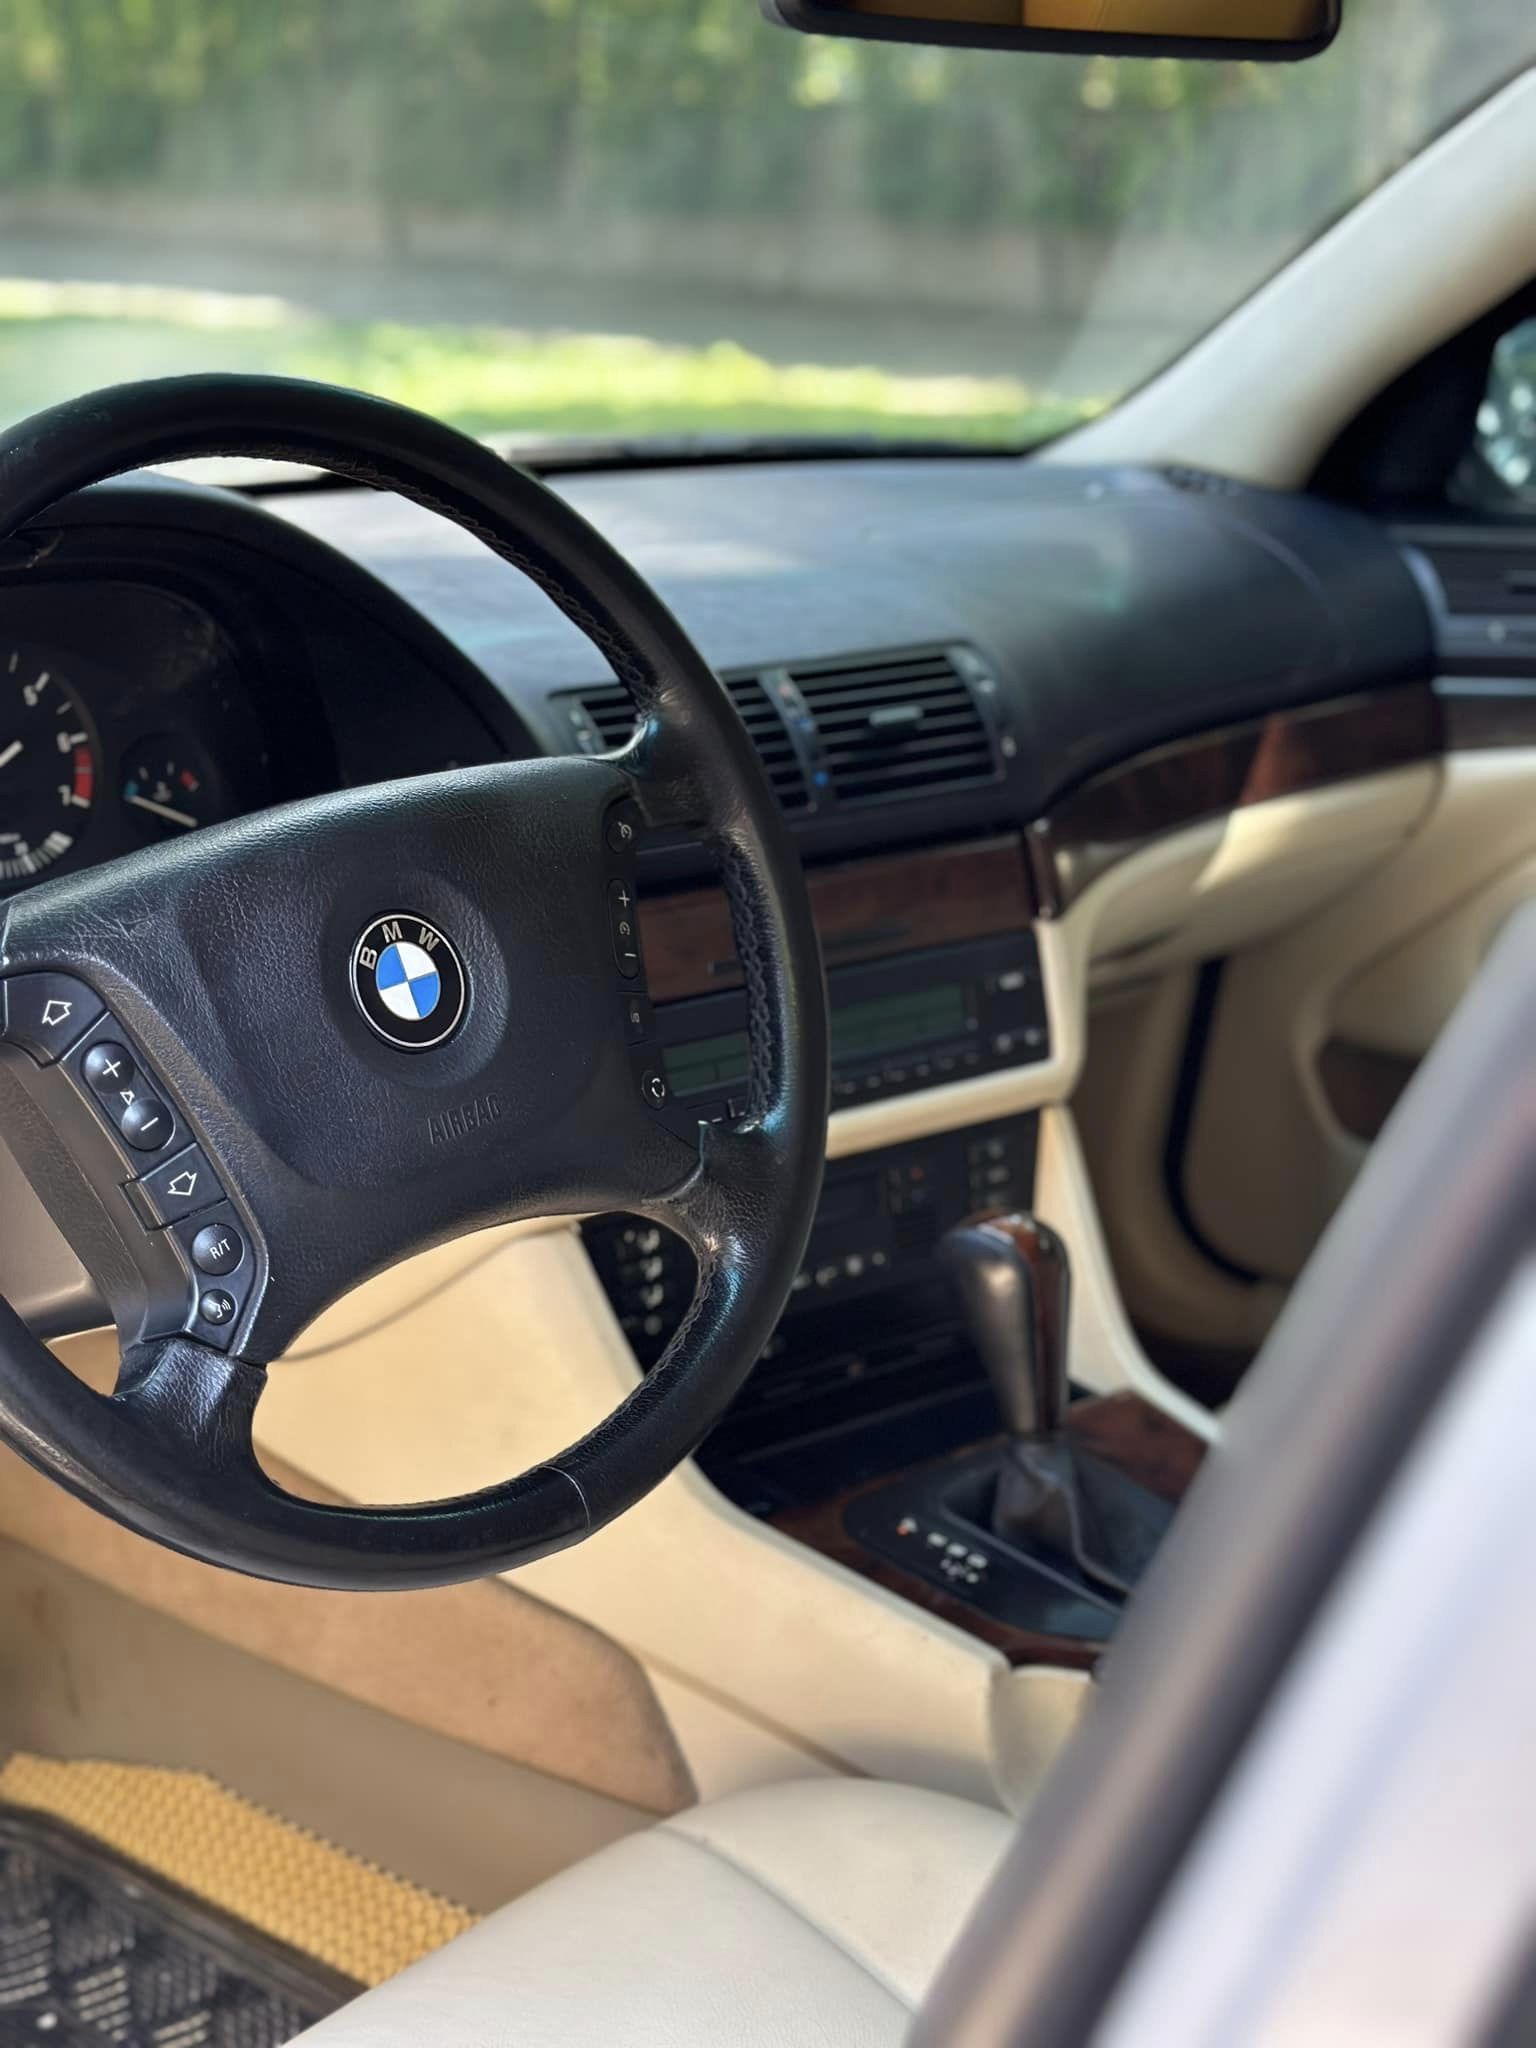 Thích BMW 5-Series mà chỉ có 140 triệu đồng thì chiếc xe này là một lựa chọn: Nhiều trang bị cao cấp, từng được giám đốc dùng- Ảnh 9.